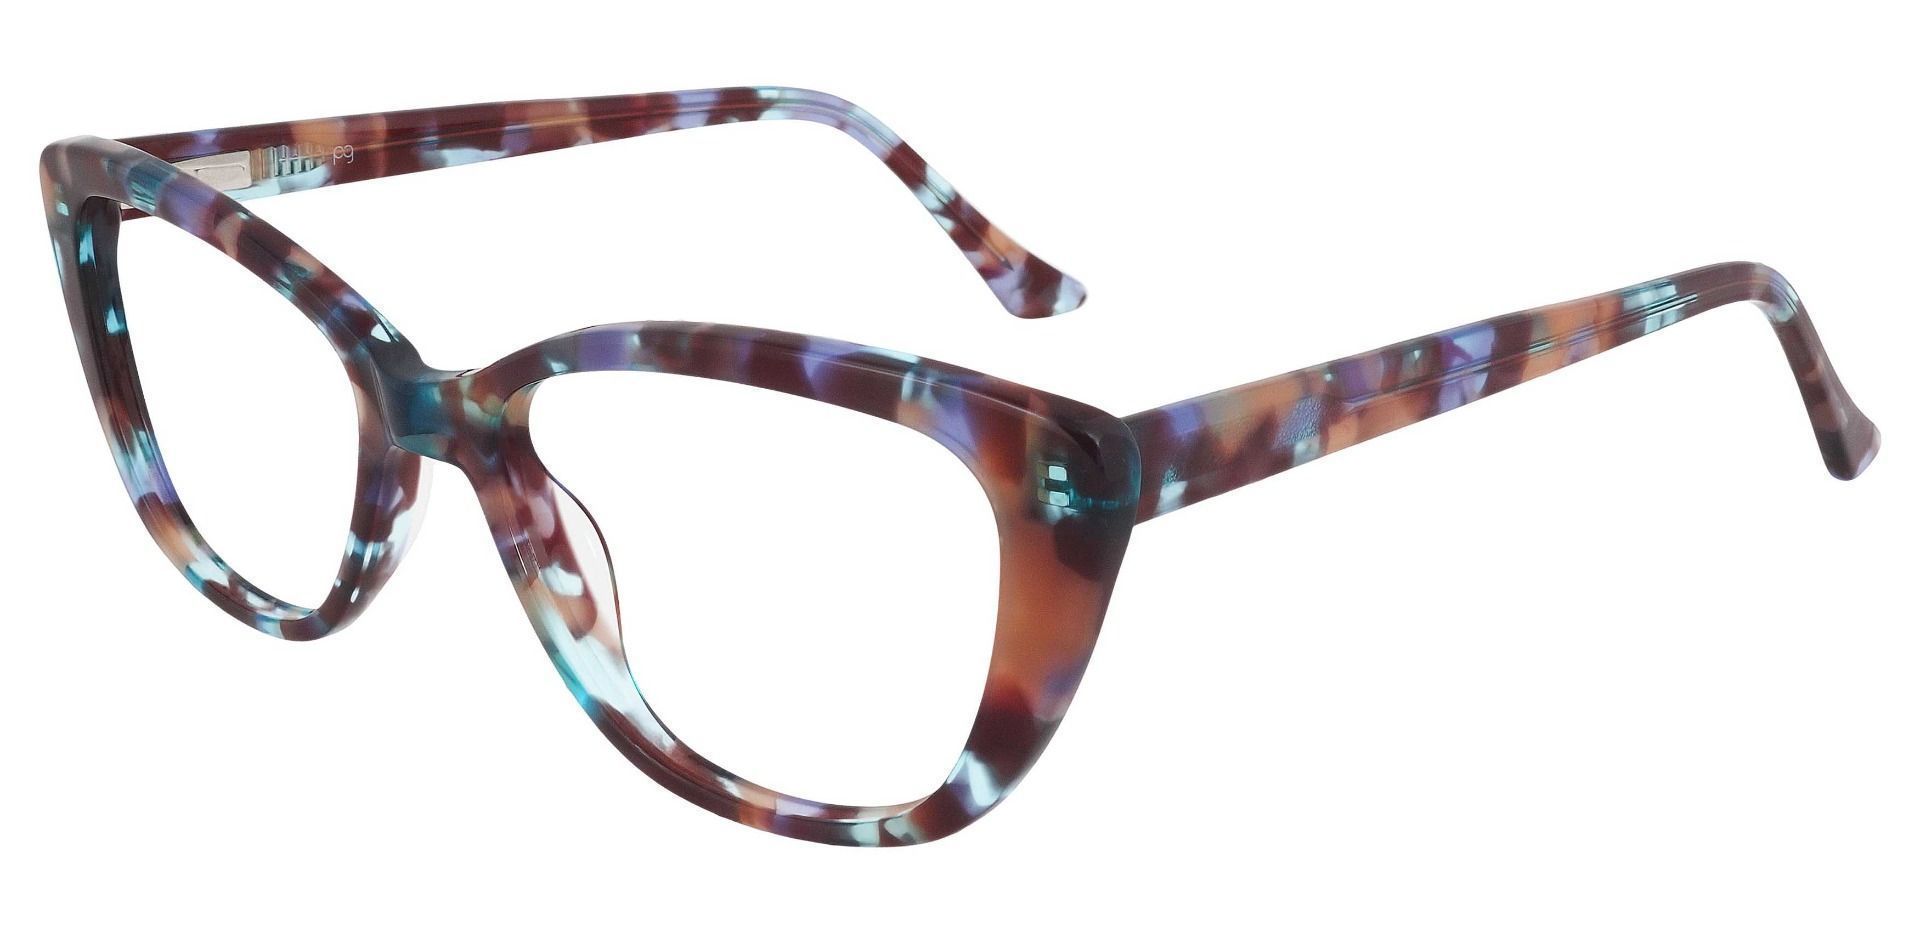 Athena Cat-Eye Eyeglasses Frame - Floral